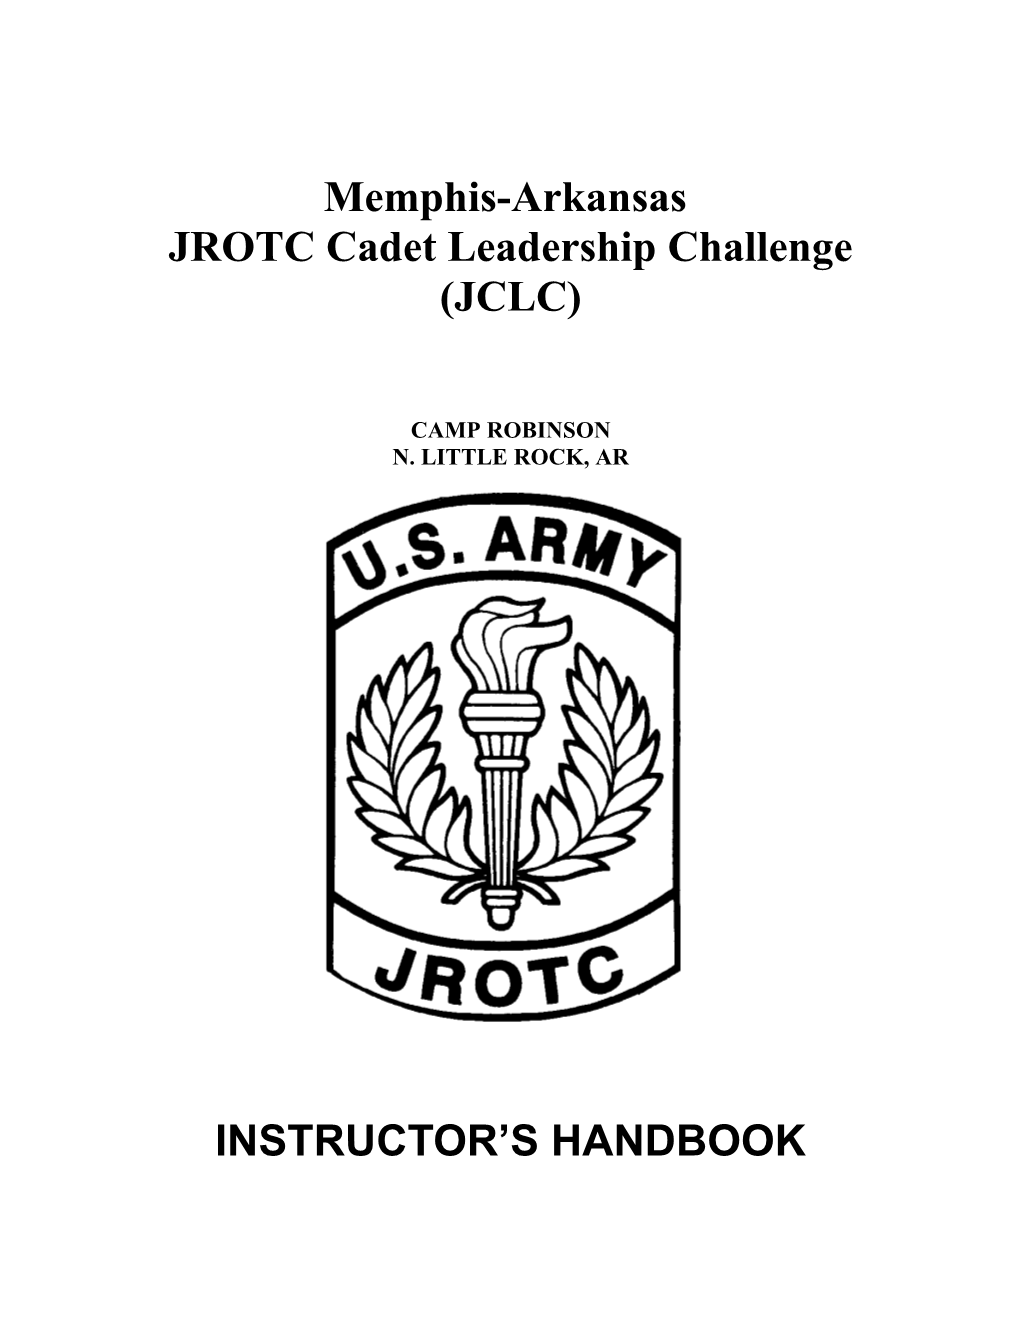 JROTC Cadet Leadership Challenge